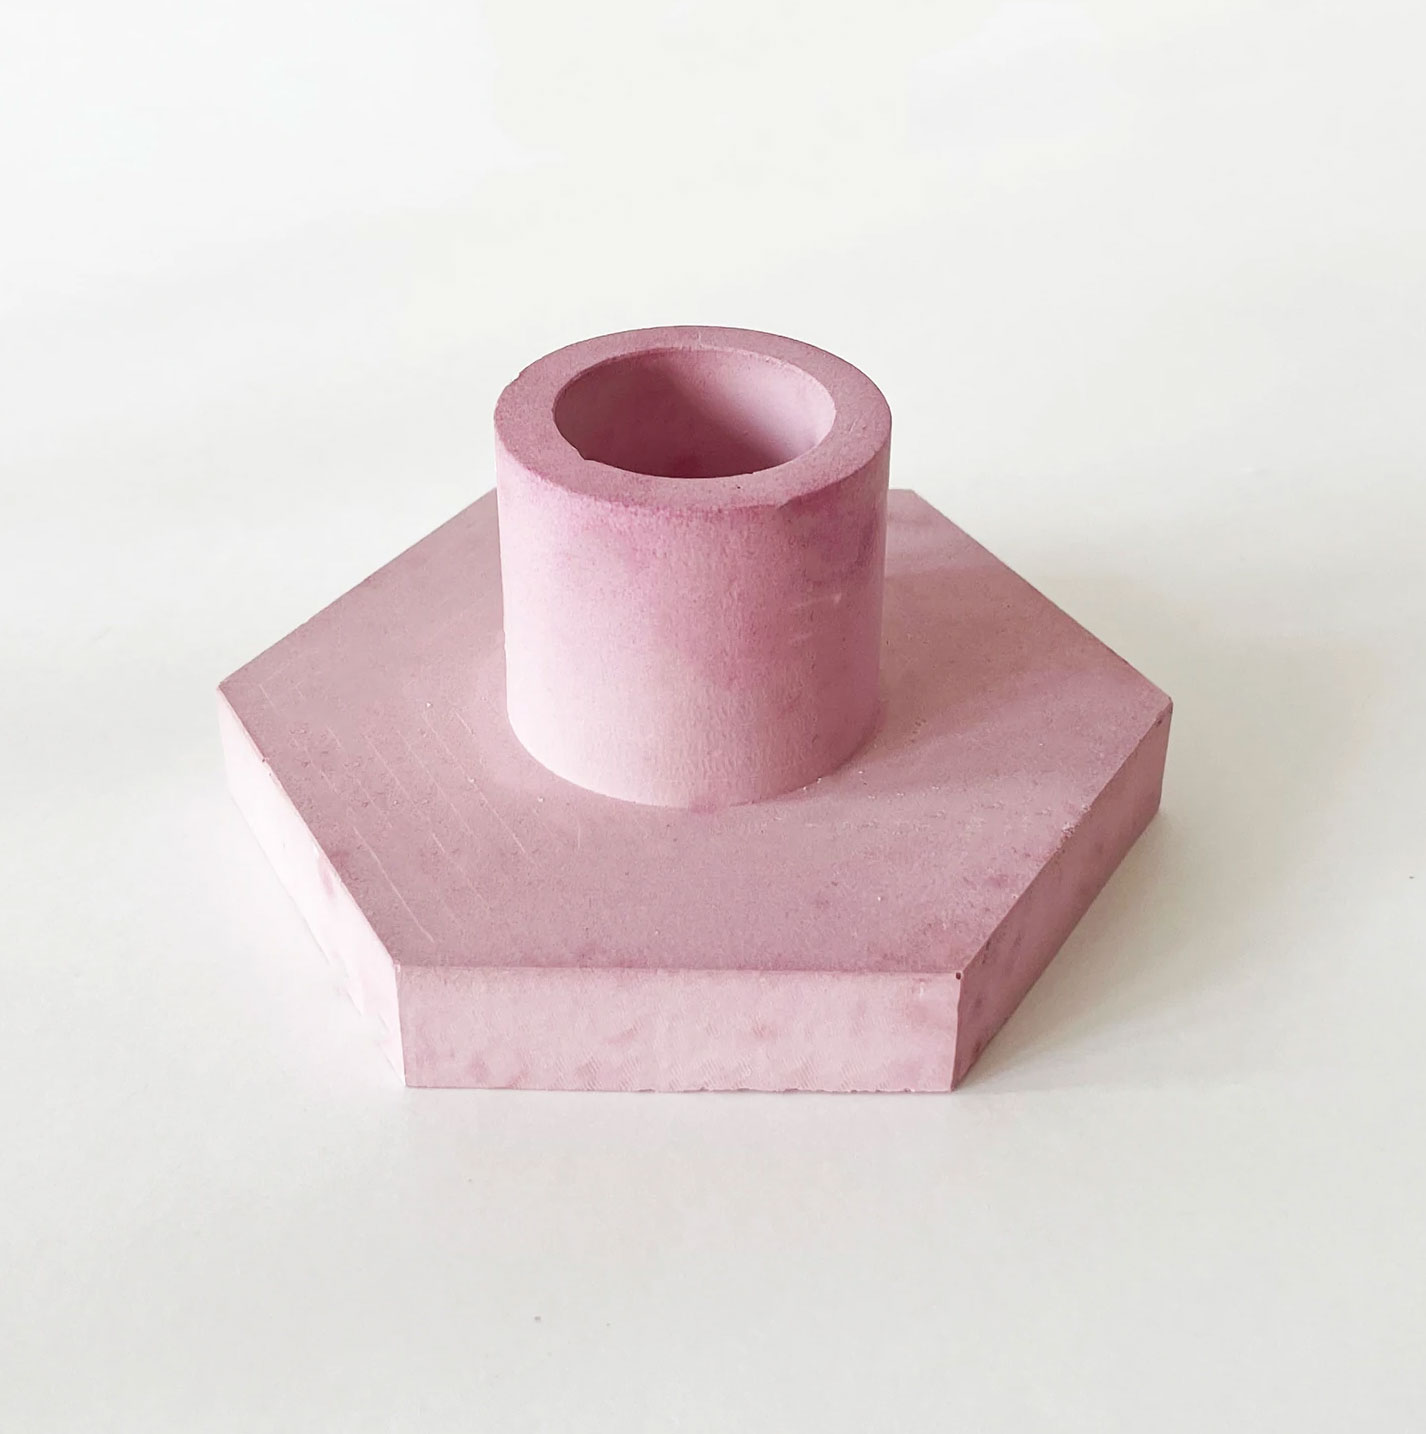 Beton Kerzenständer in Pink von by Vivi, pro Stück...passen toll zu den Dip Dye Kerzen  